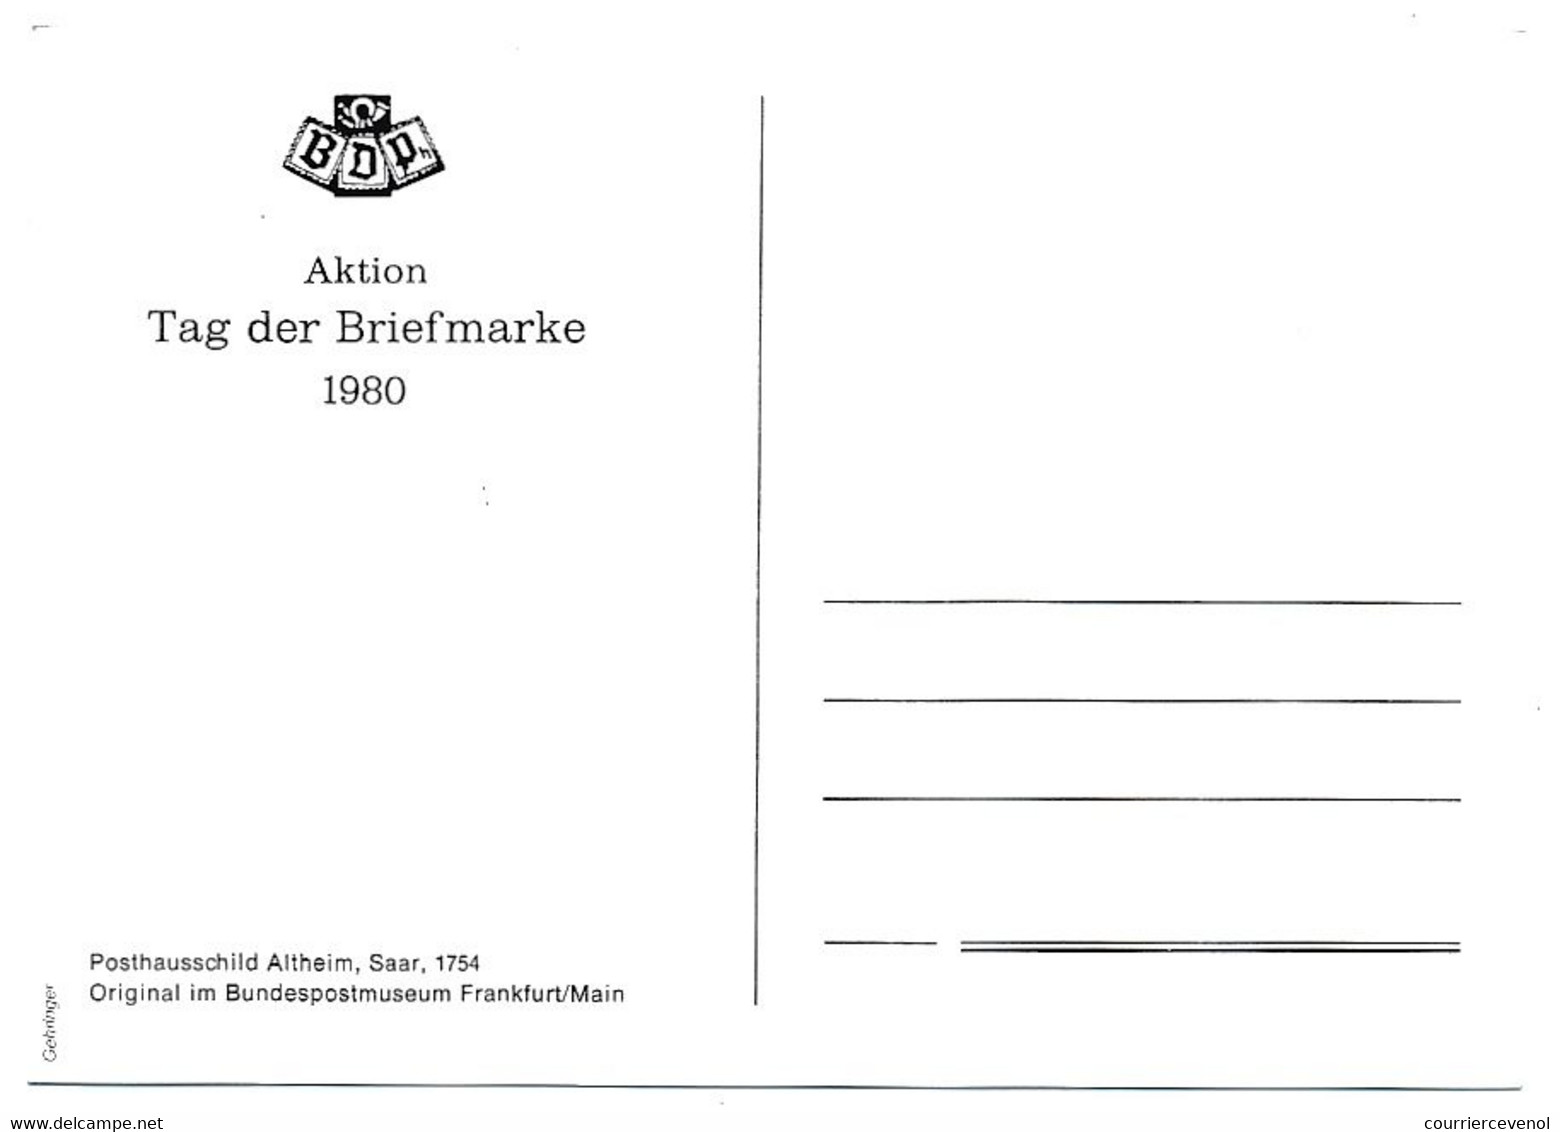 ALLEMAGNE - 4 Cartes Maximum - FIP Kongress Essen - 1980 - Autres & Non Classés